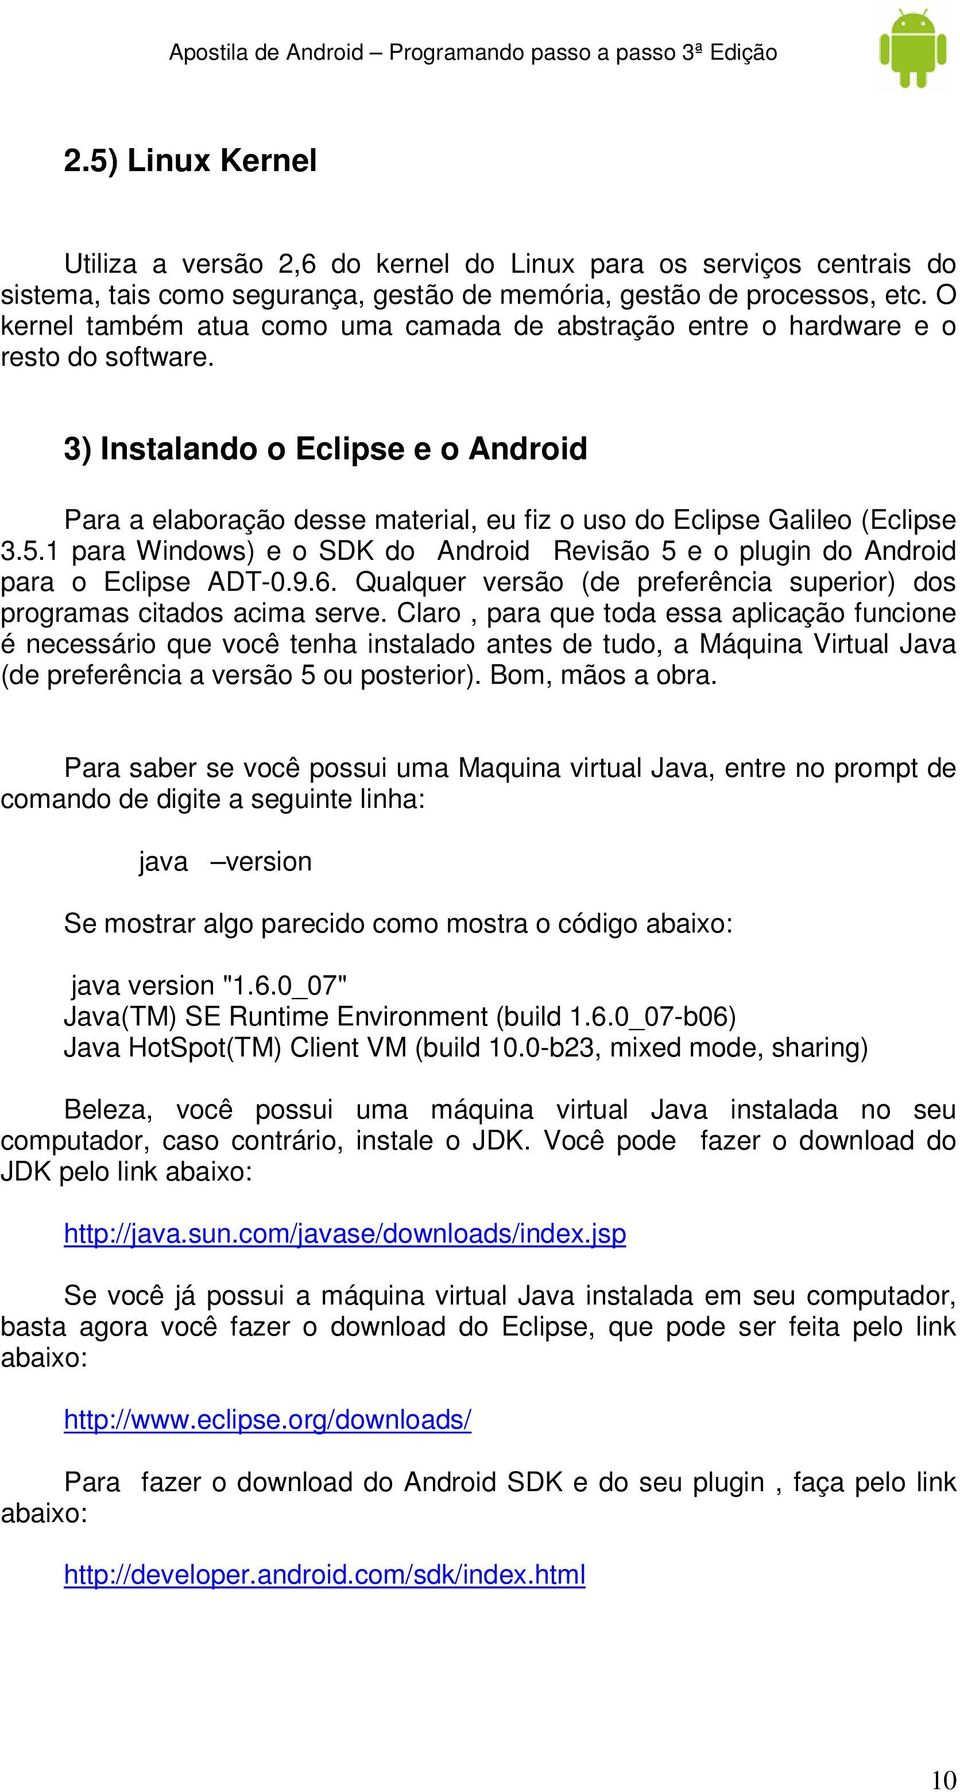 3) Instalando o Eclipse e o Android Para a elaboração desse material, eu fiz o uso do Eclipse Galileo (Eclipse 3.5.